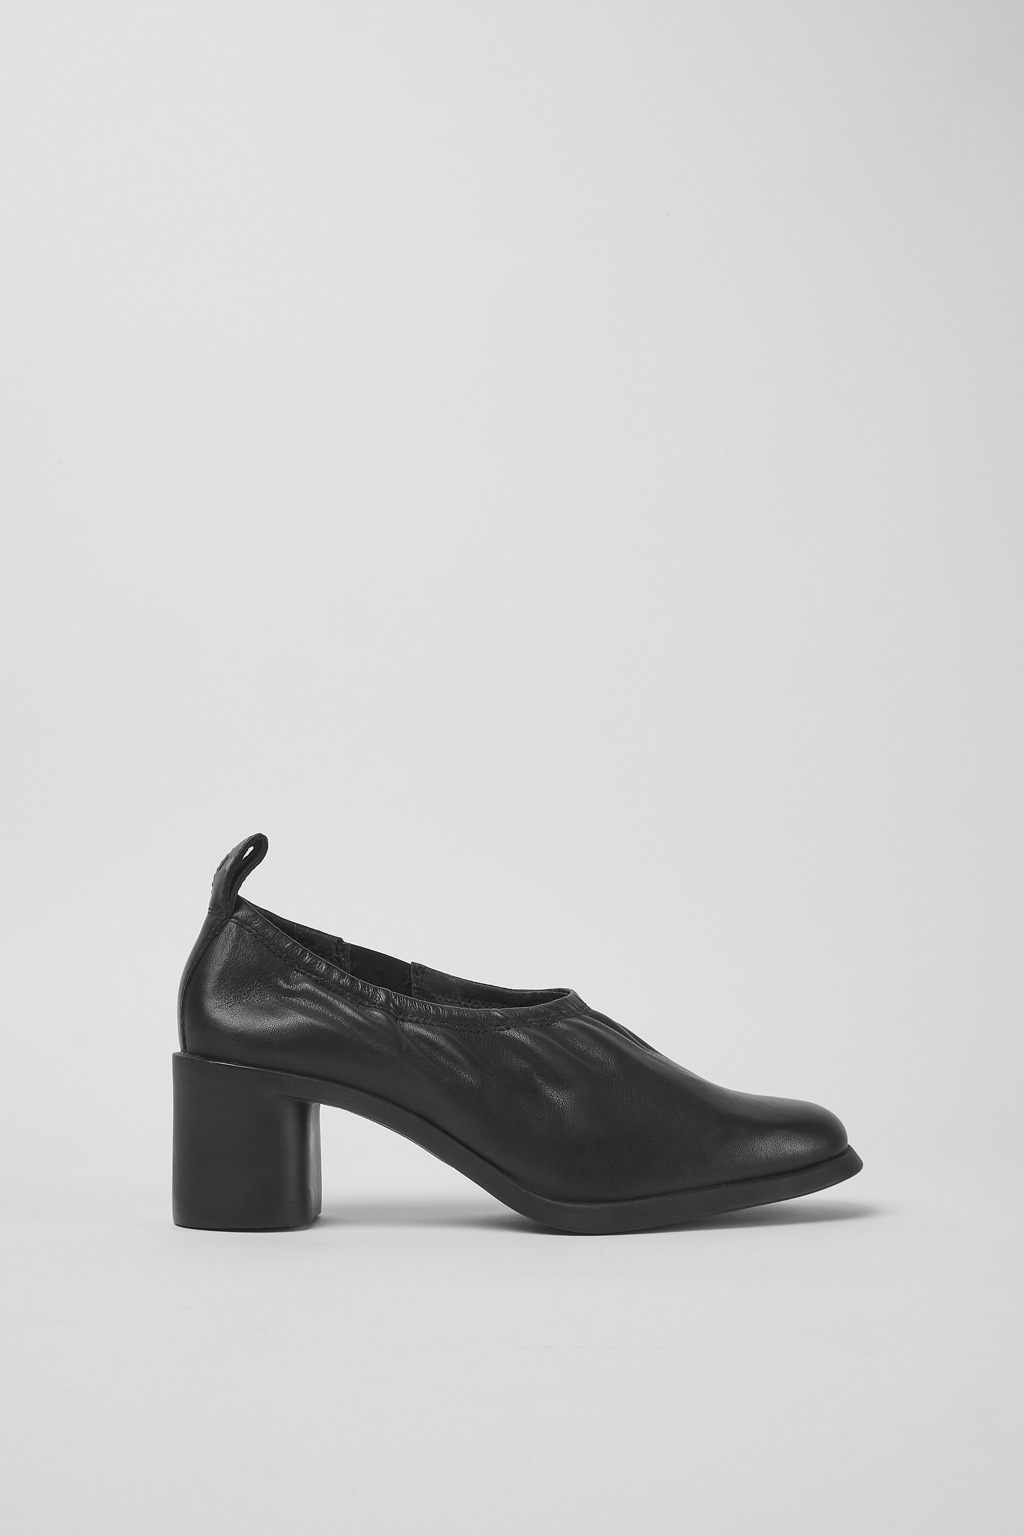 Meda Black Formal Shoes for Women - Camper Shoes